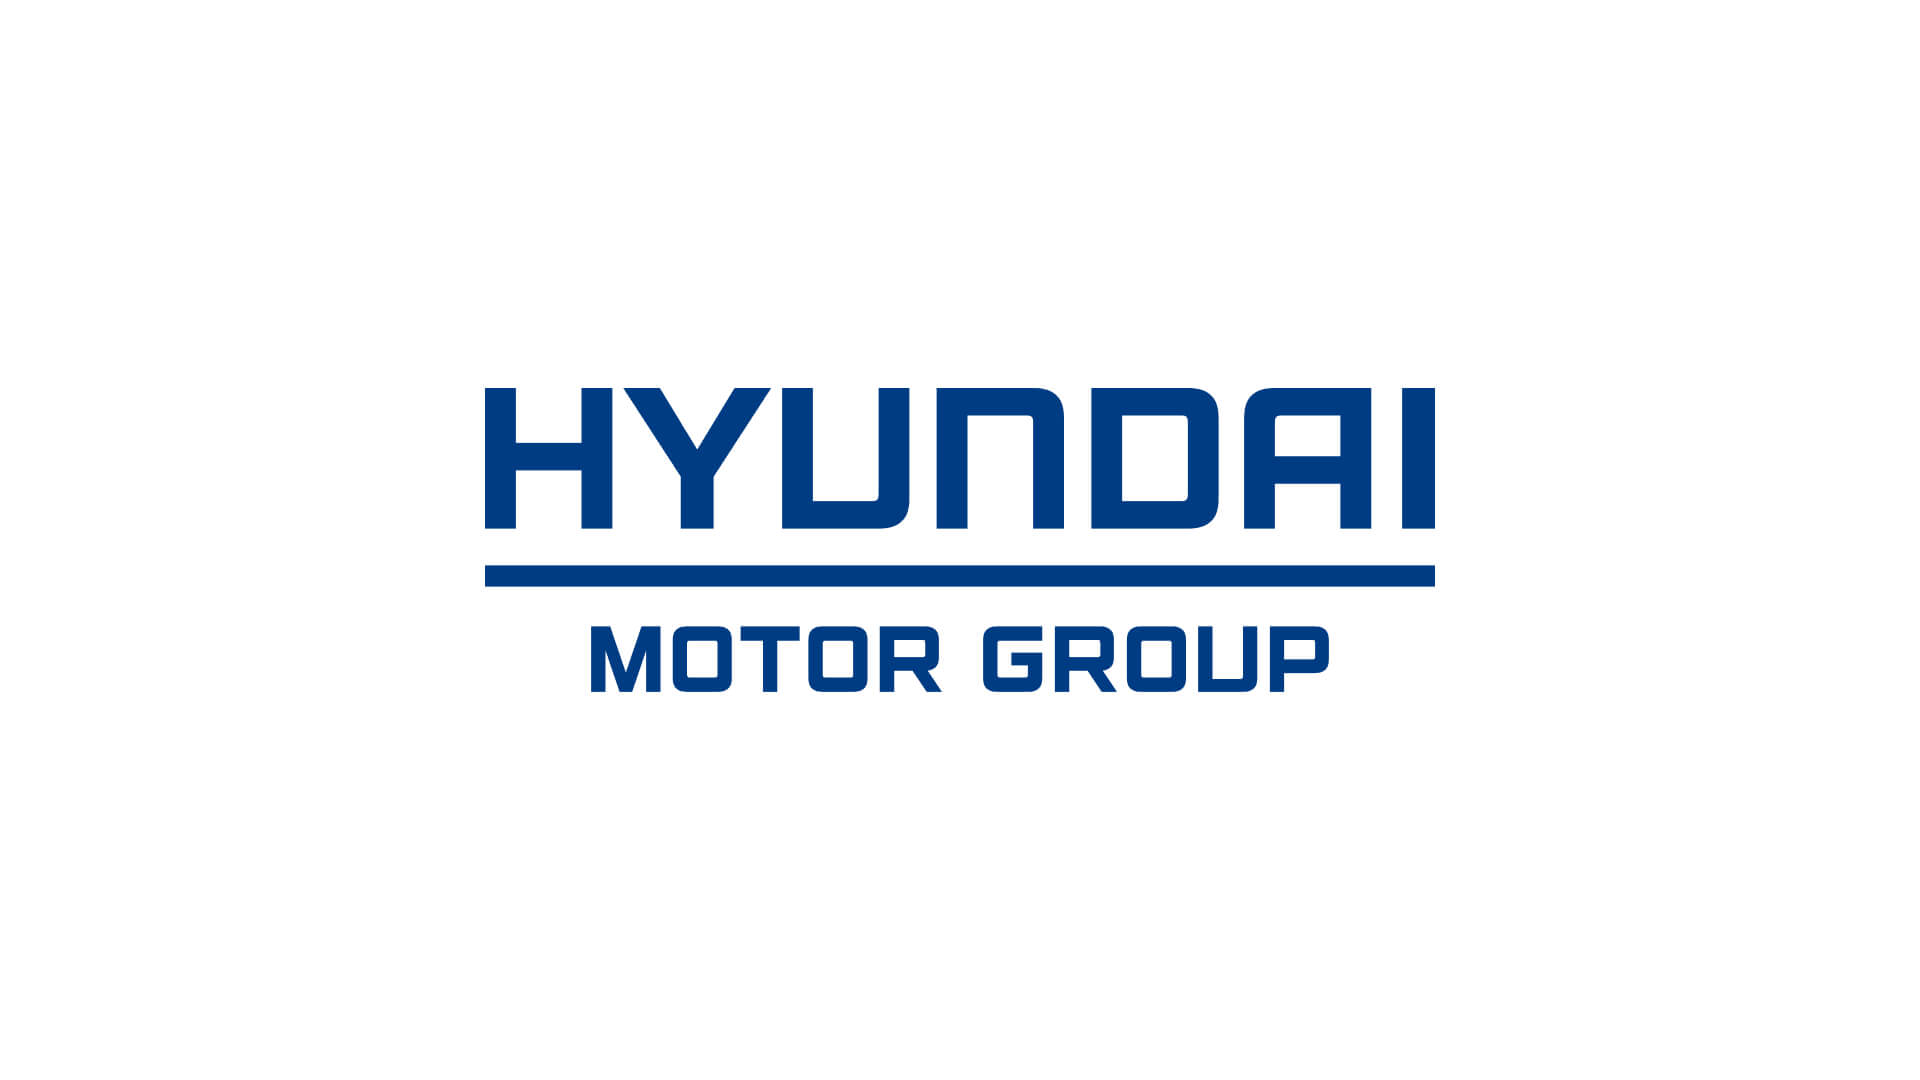 Hyundai Motor Group logo in color